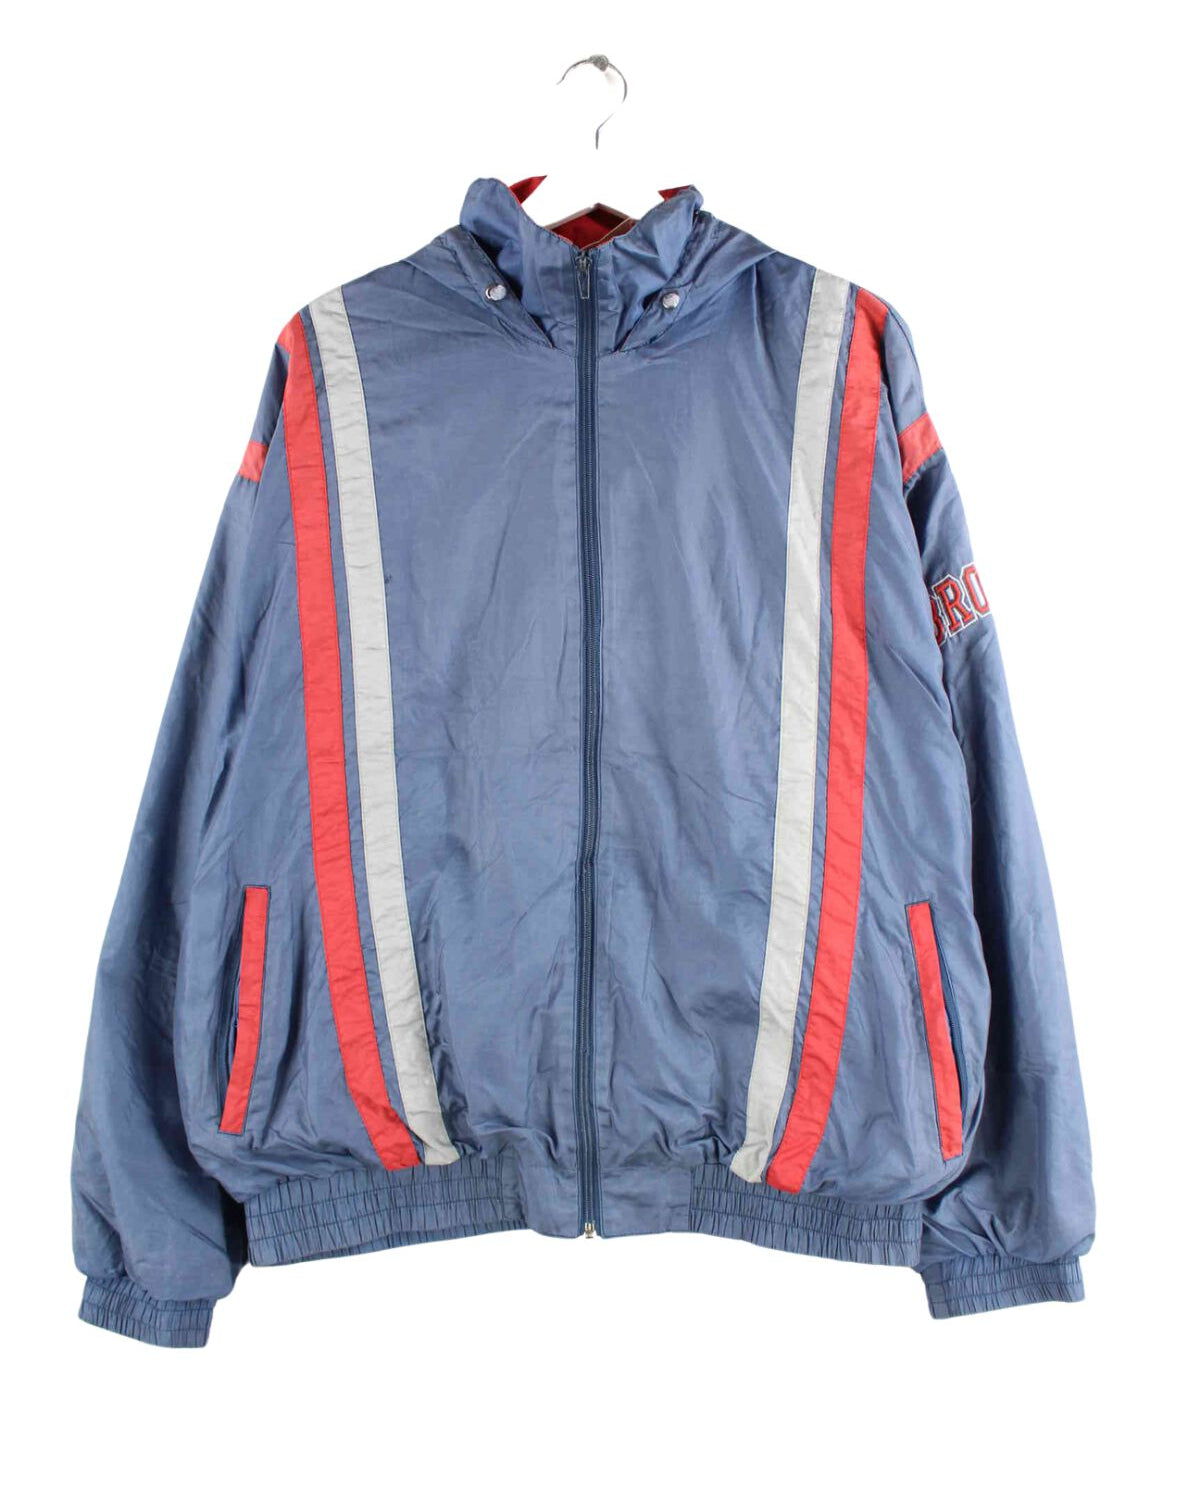 Vintage 90s Brooks Embroidered Trainingsjacke Blau XL (front image)